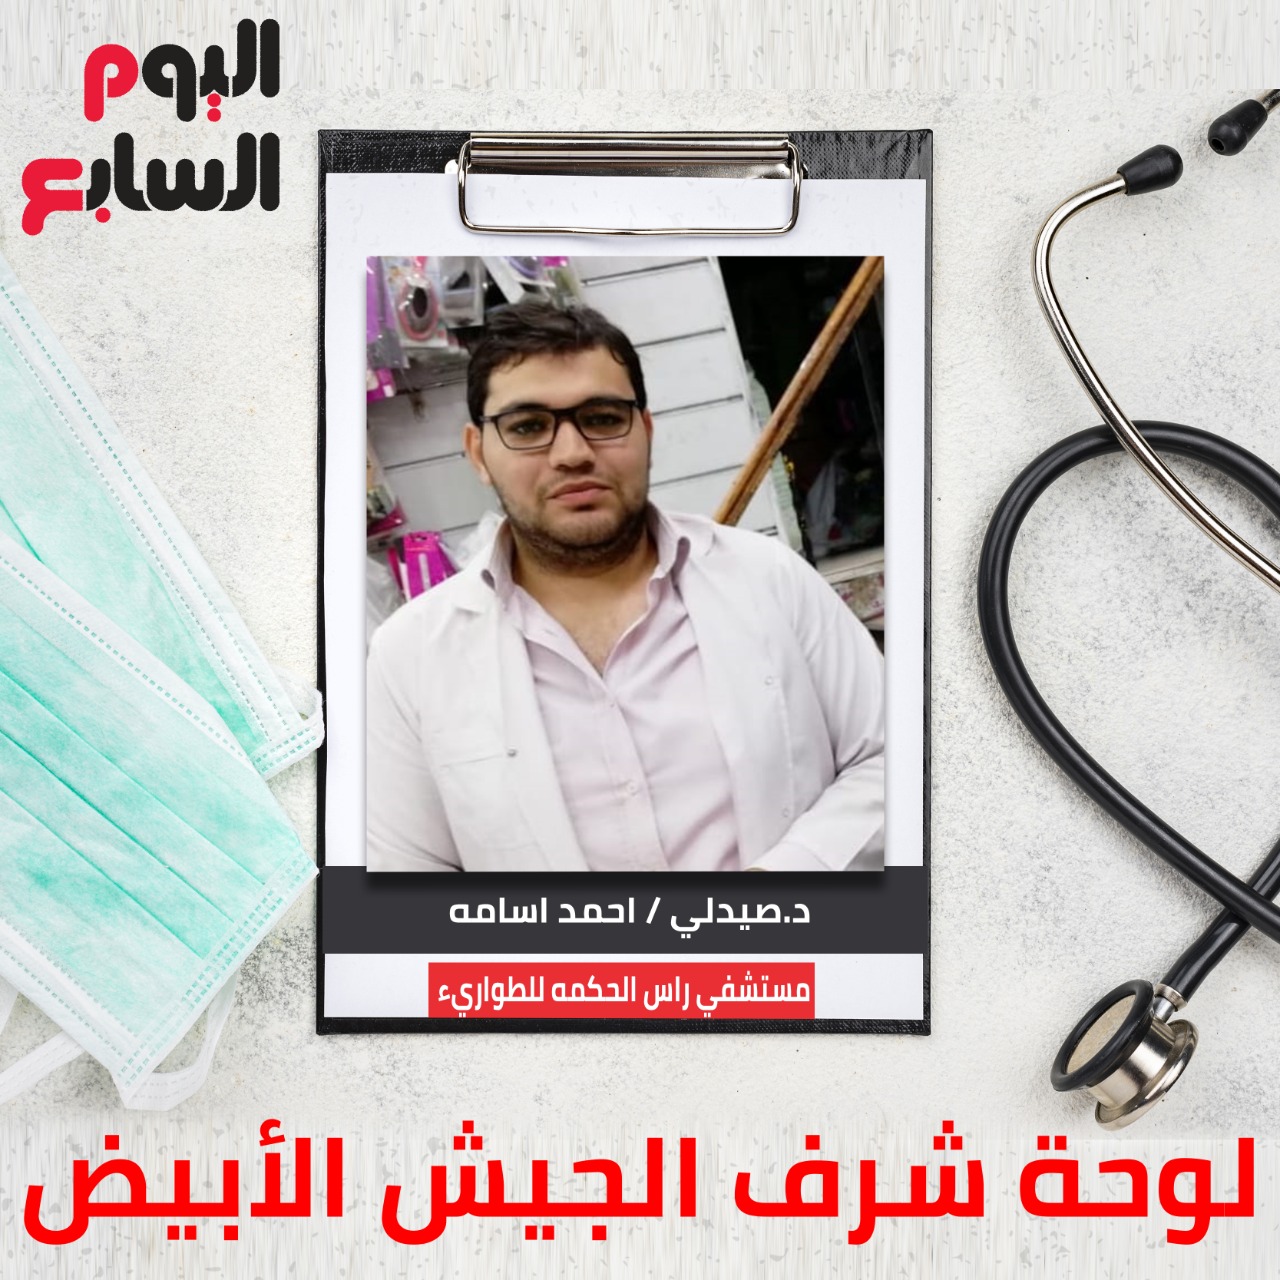 دكتور صيدلى أحمد أسامة مستشفى رأس الحكمة للطوارئ